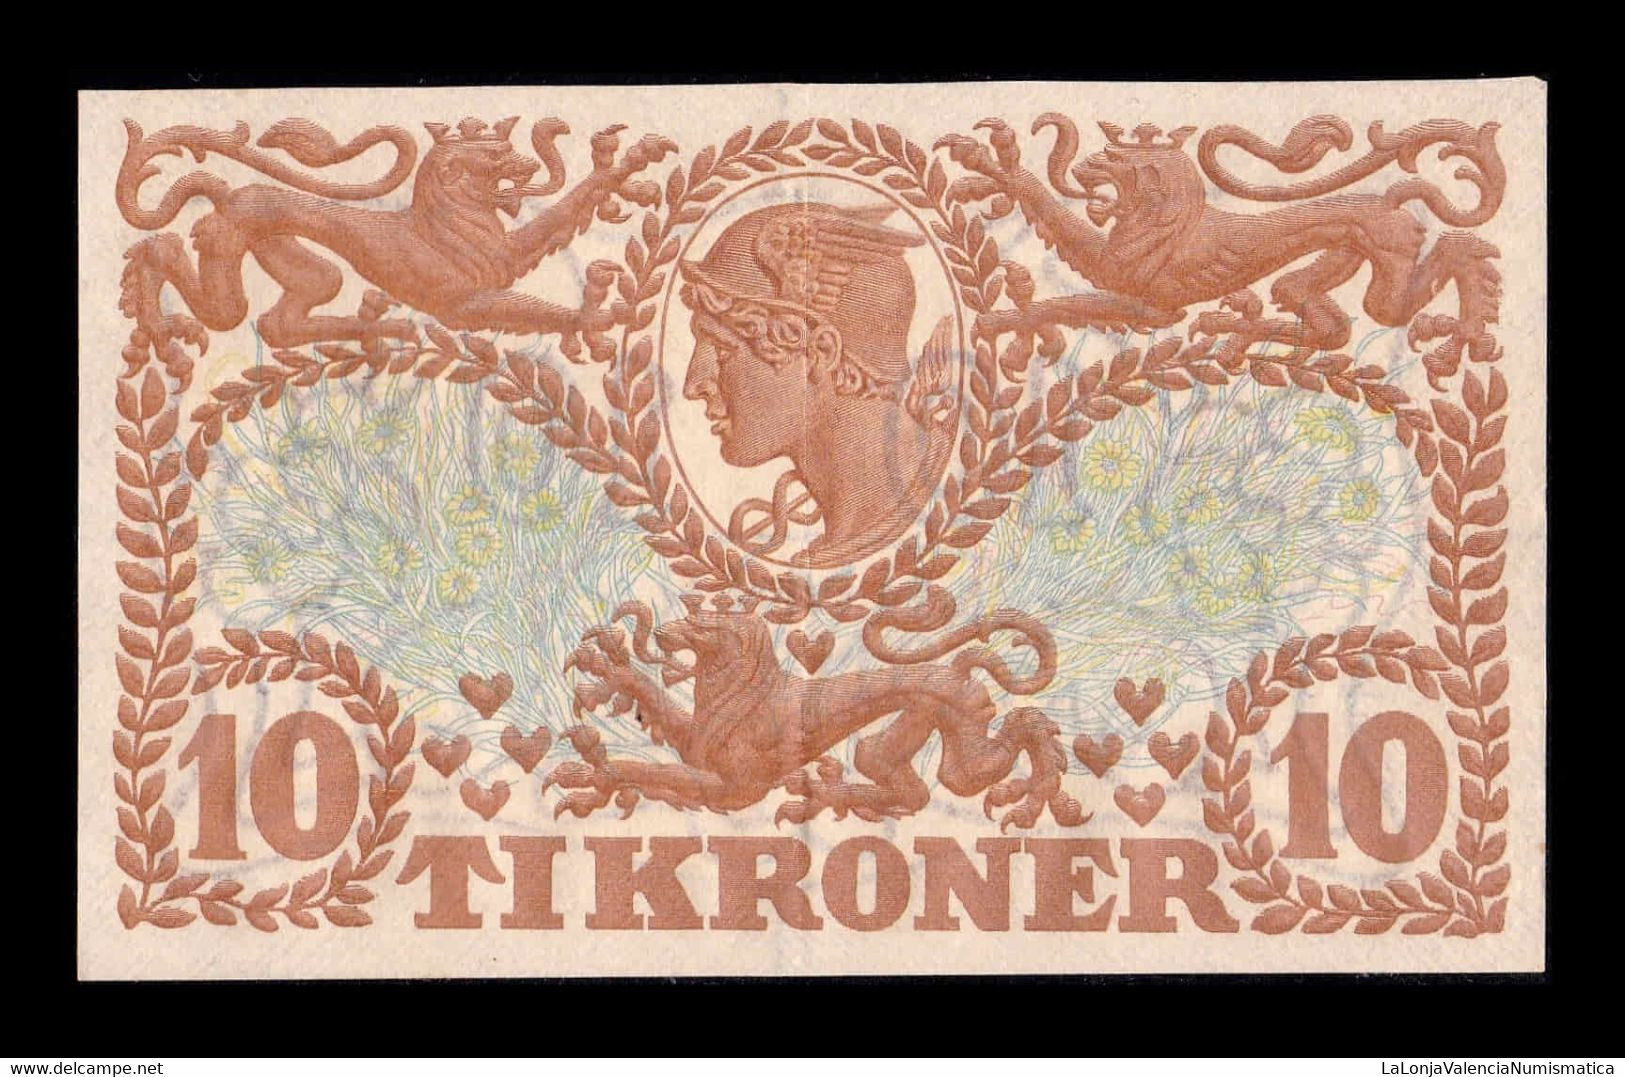 Dinamarca Denmark 10 Kroner 1943 Pick 31p (1) EBC+ XF+ - Denmark